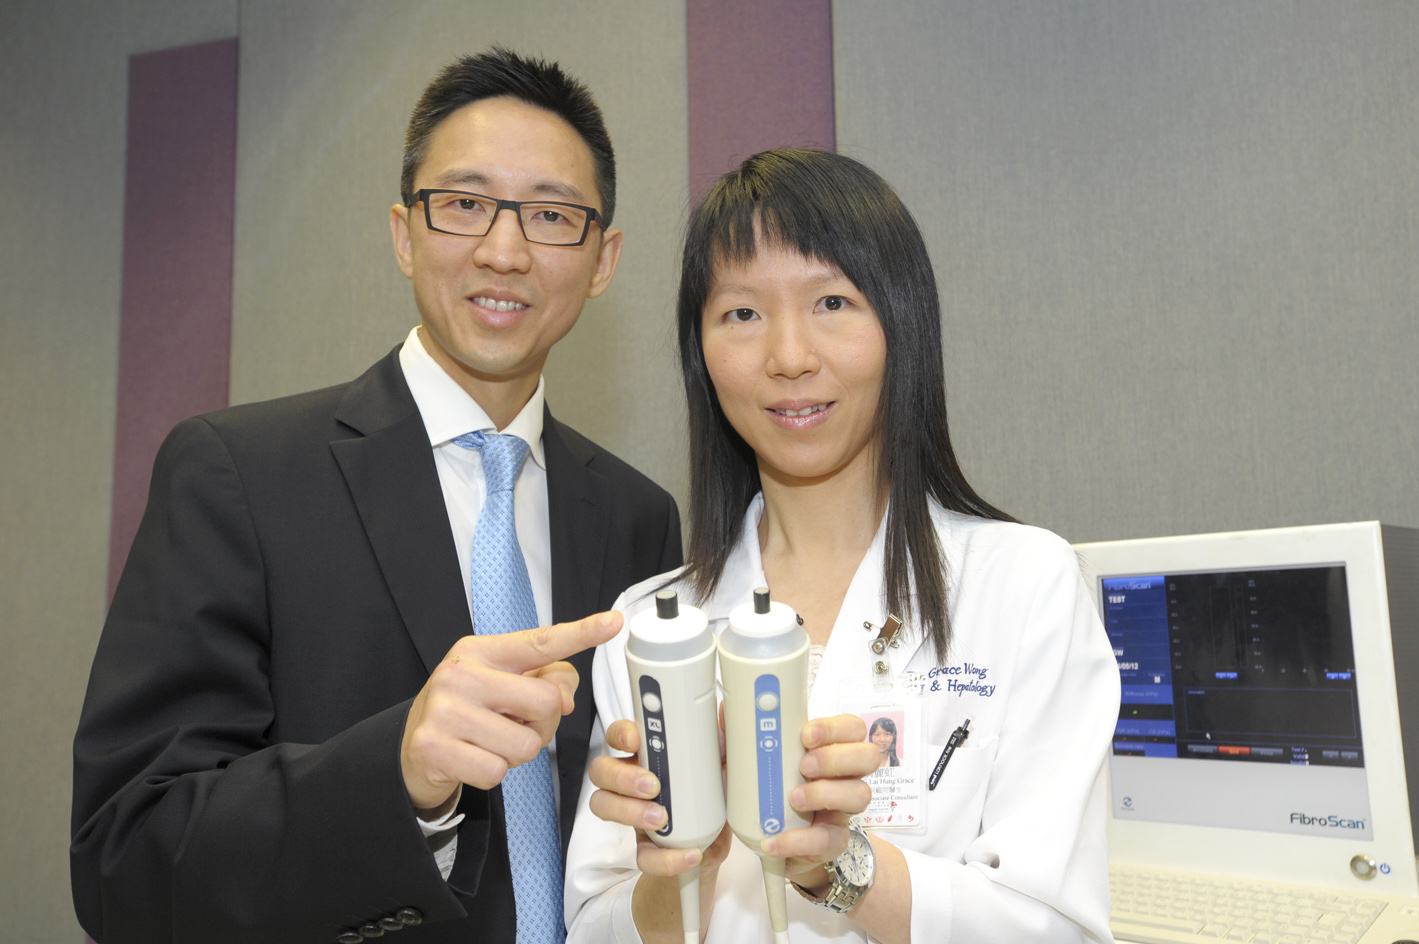 陳力元教授與黃麗虹教授展示無創肝纖維化掃瞄器的加大碼探頭(左方) 和正常探頭(右方)